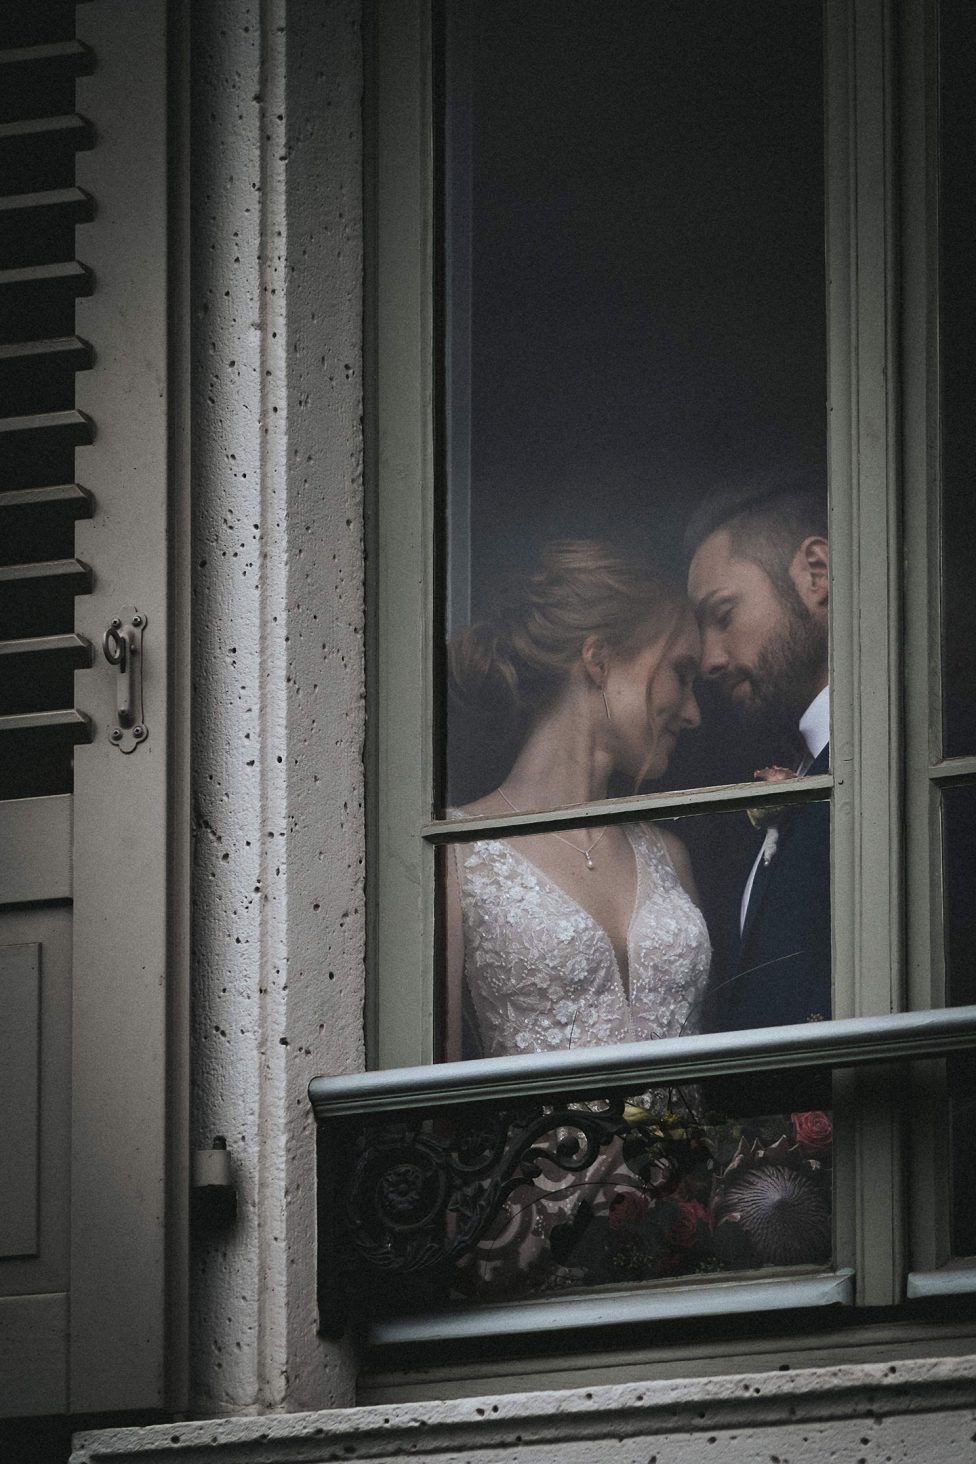 Die Villa Büchner: Heiraten in denkmalgeschützter Atmosphäre